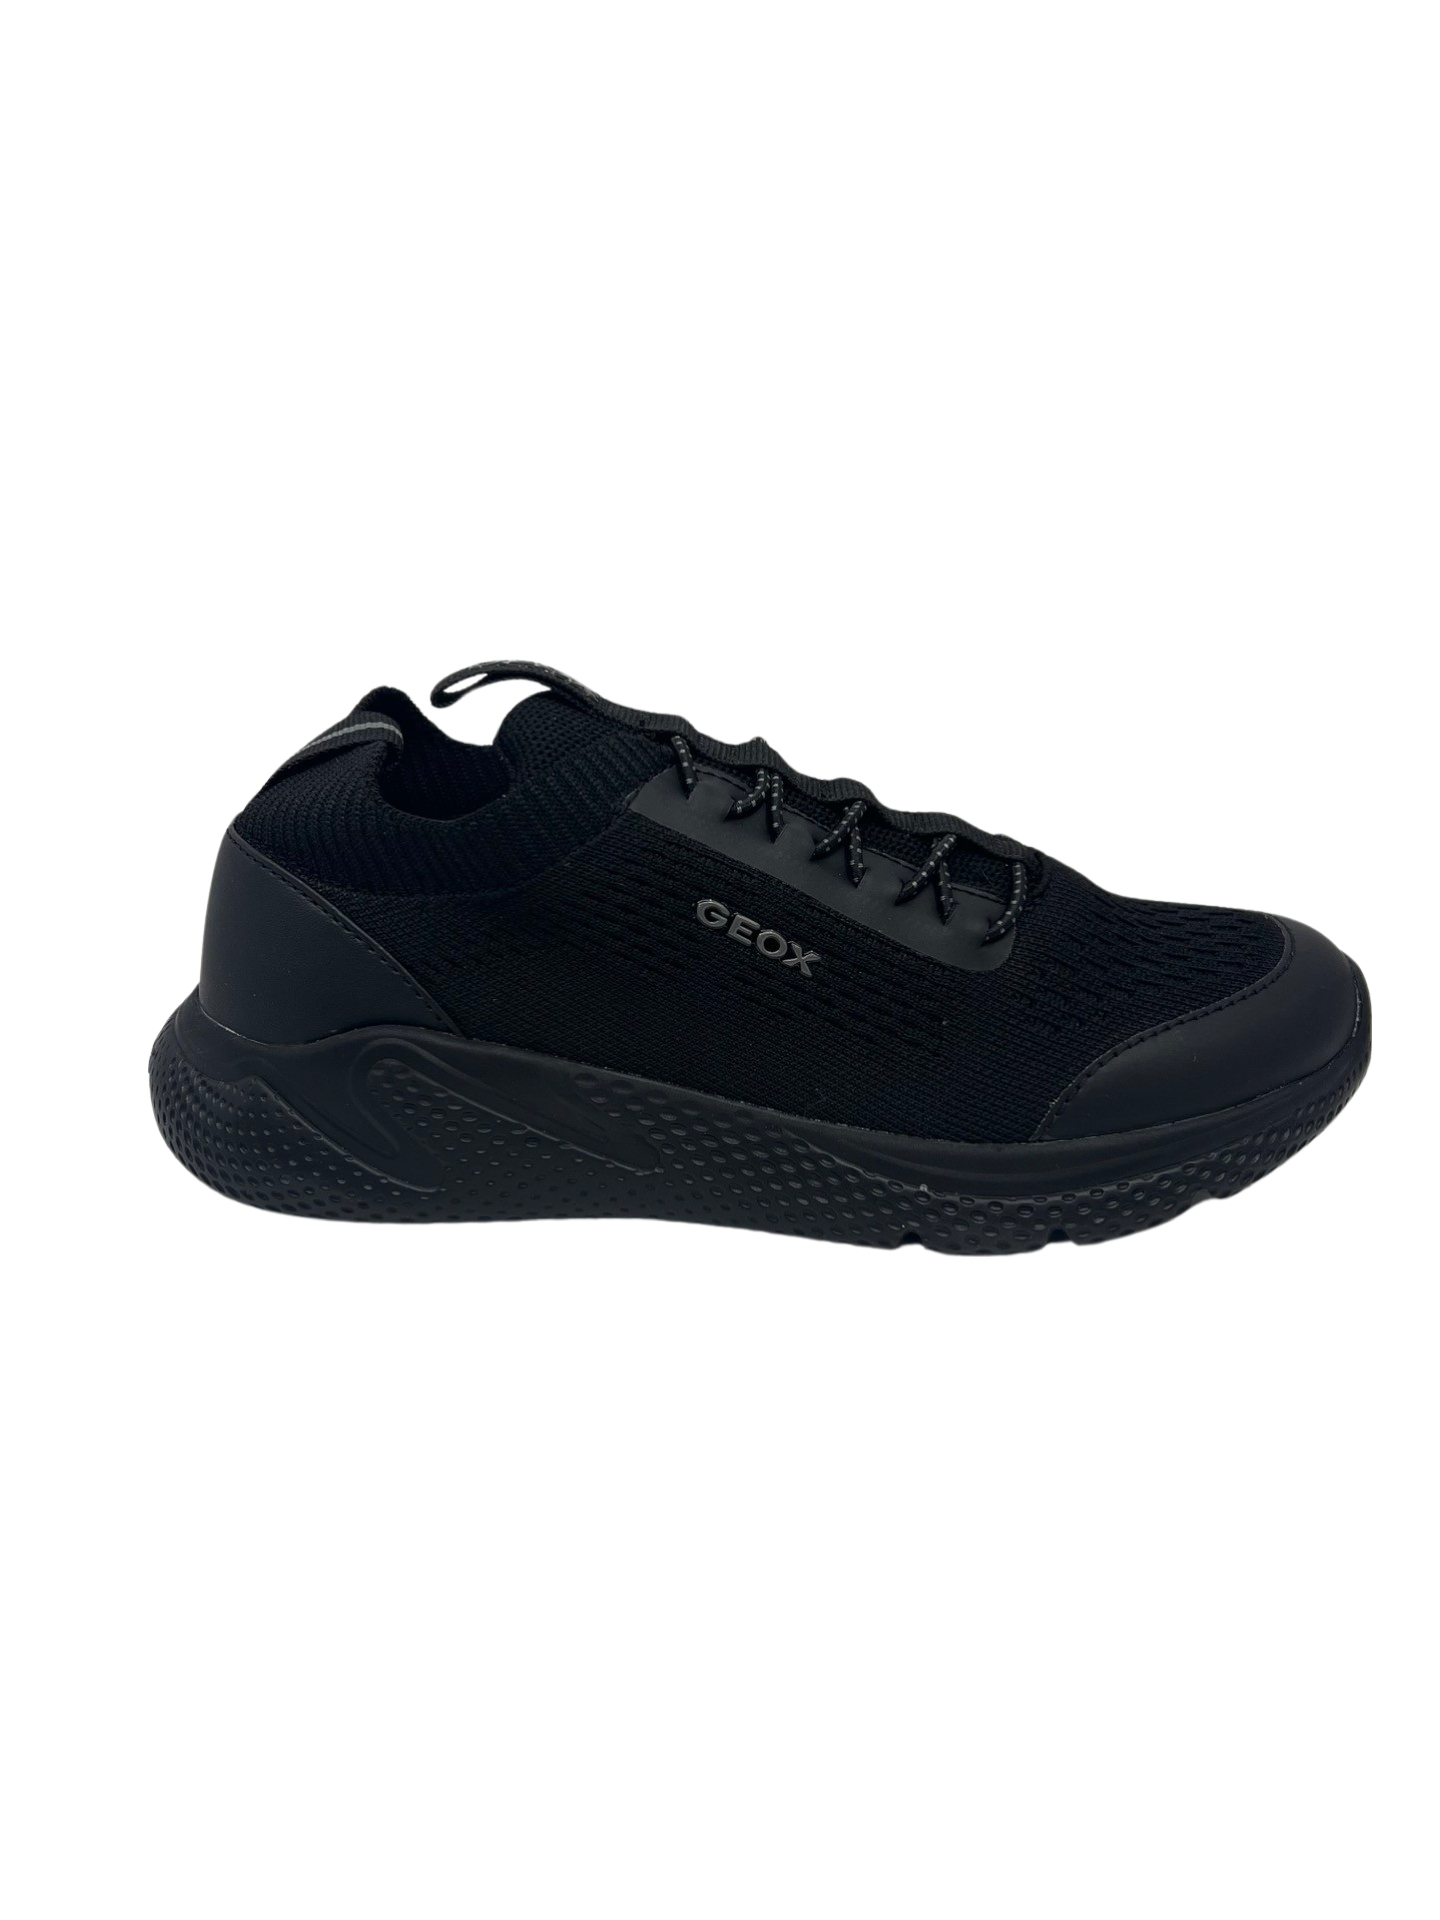 Geox Black Knit Sneaker